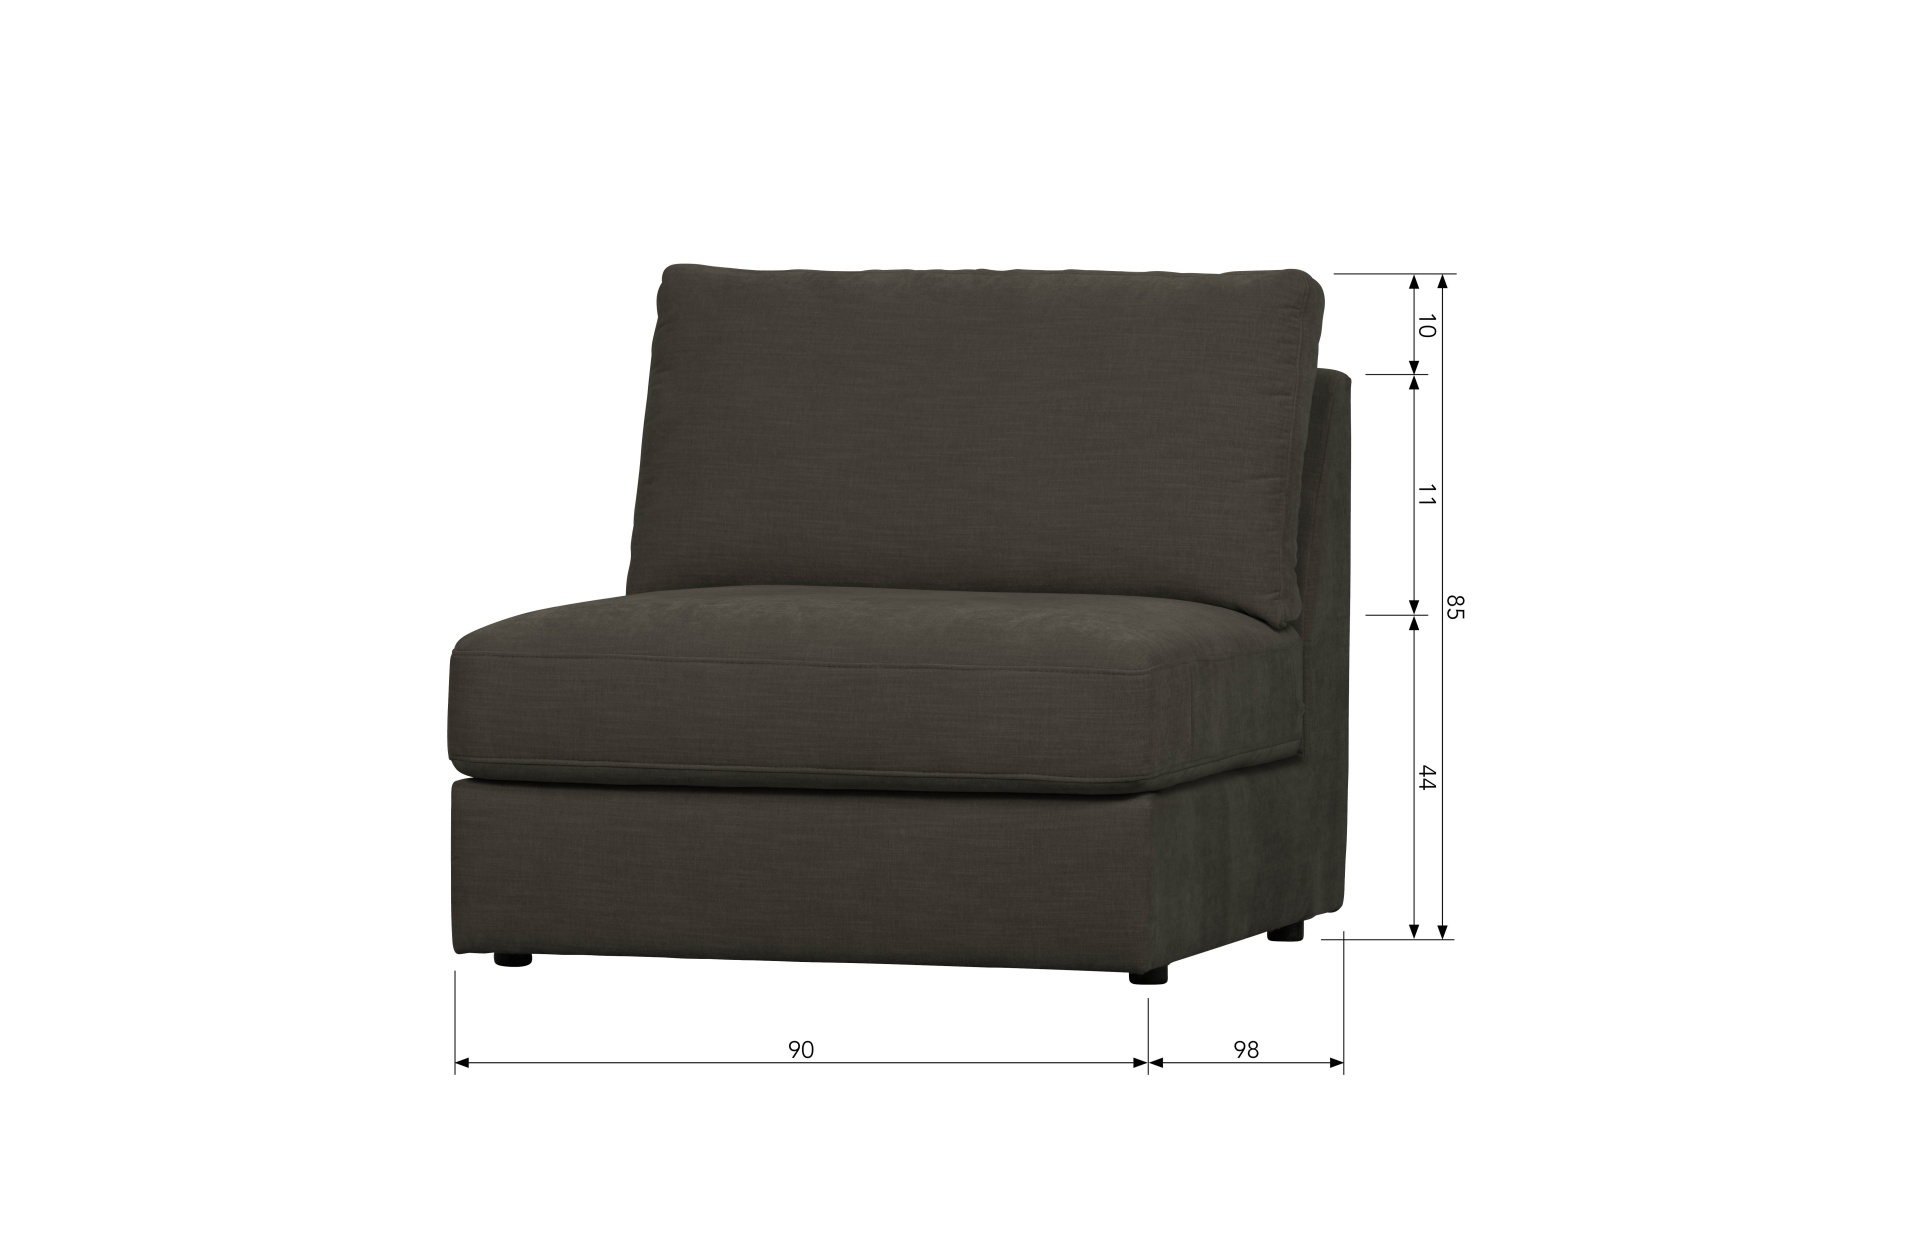 Das Modulsofa Family überzeugt mit seinem modernen Design. Das Seat Element wurde aus Gewebe-Stoff gefertigt, welcher einen einen Anthrazit Farbton besitzen. Das Gestell ist aus Metall und hat eine schwarze Farbe. Das Element hat eine Sitzhöhe von 44 cm.